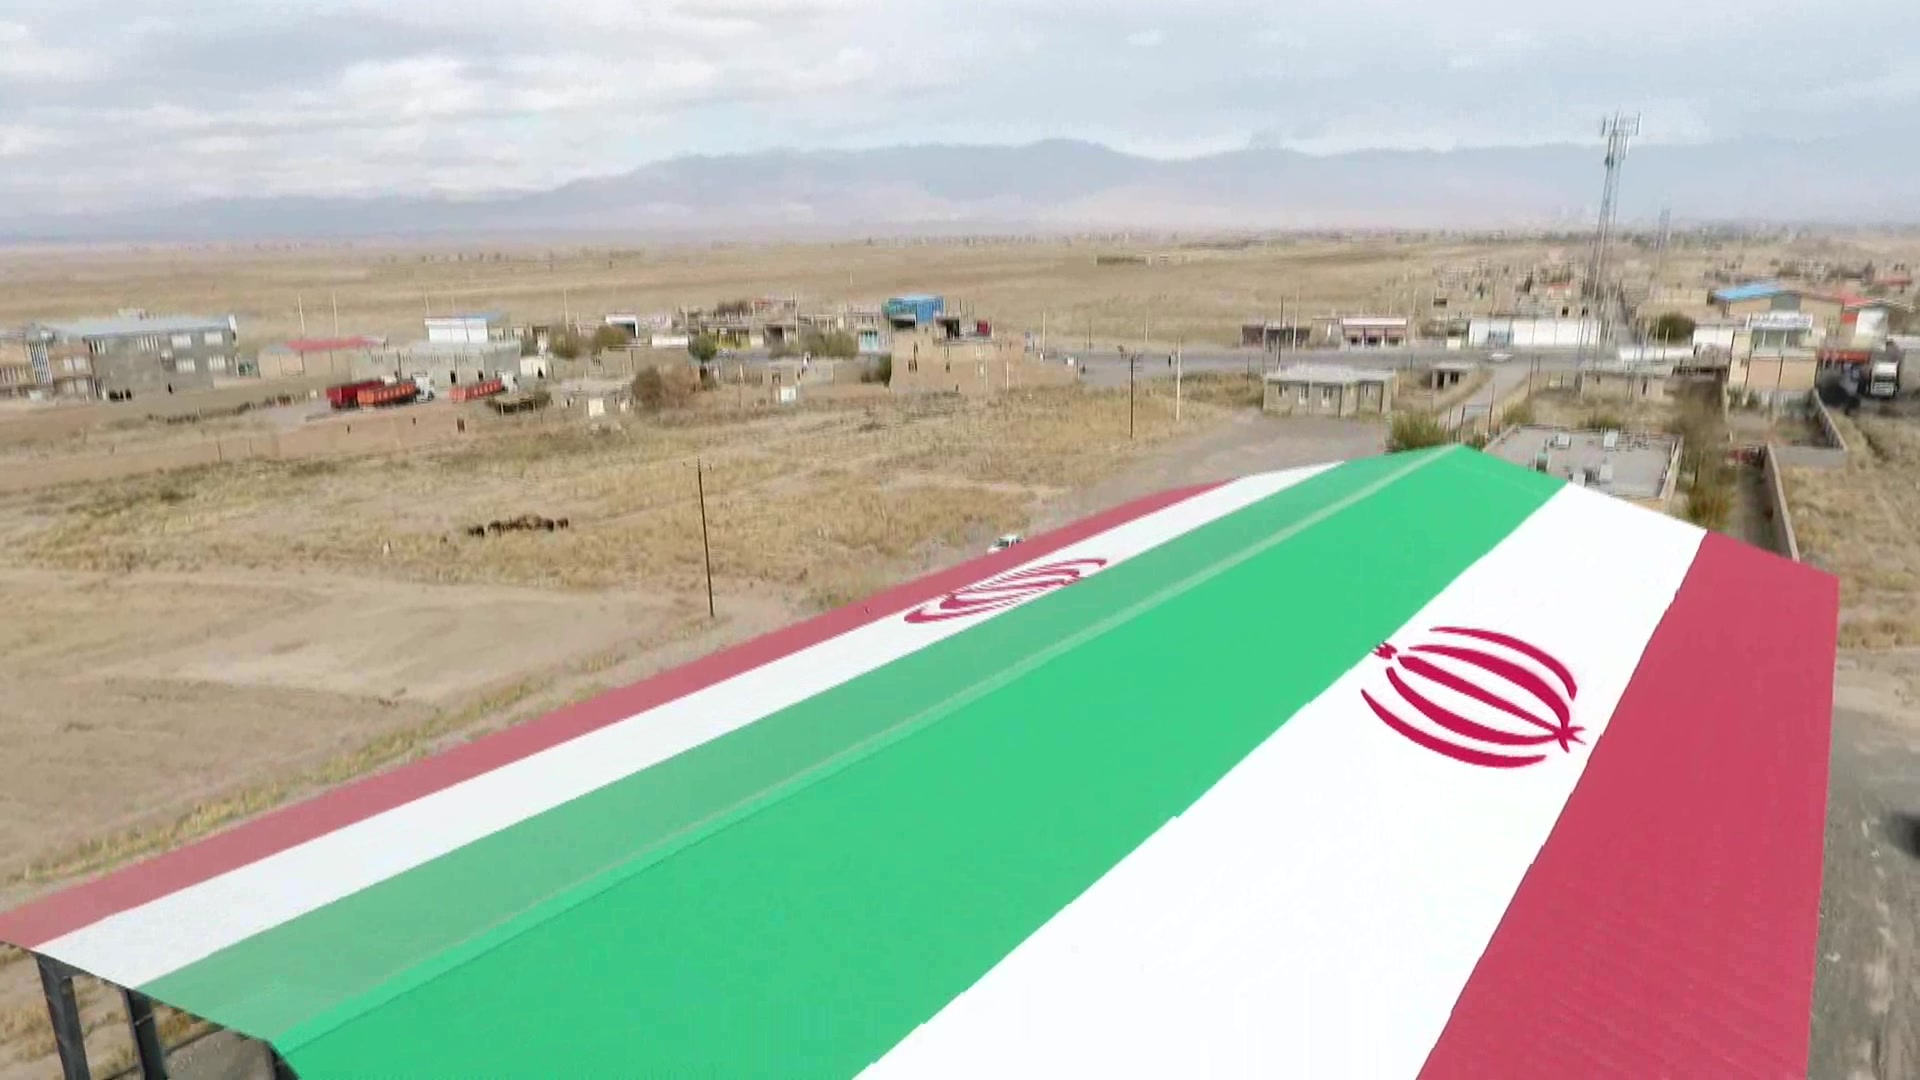 بزرگترین پرچم ایران با دو هزار متر مربع متراژ